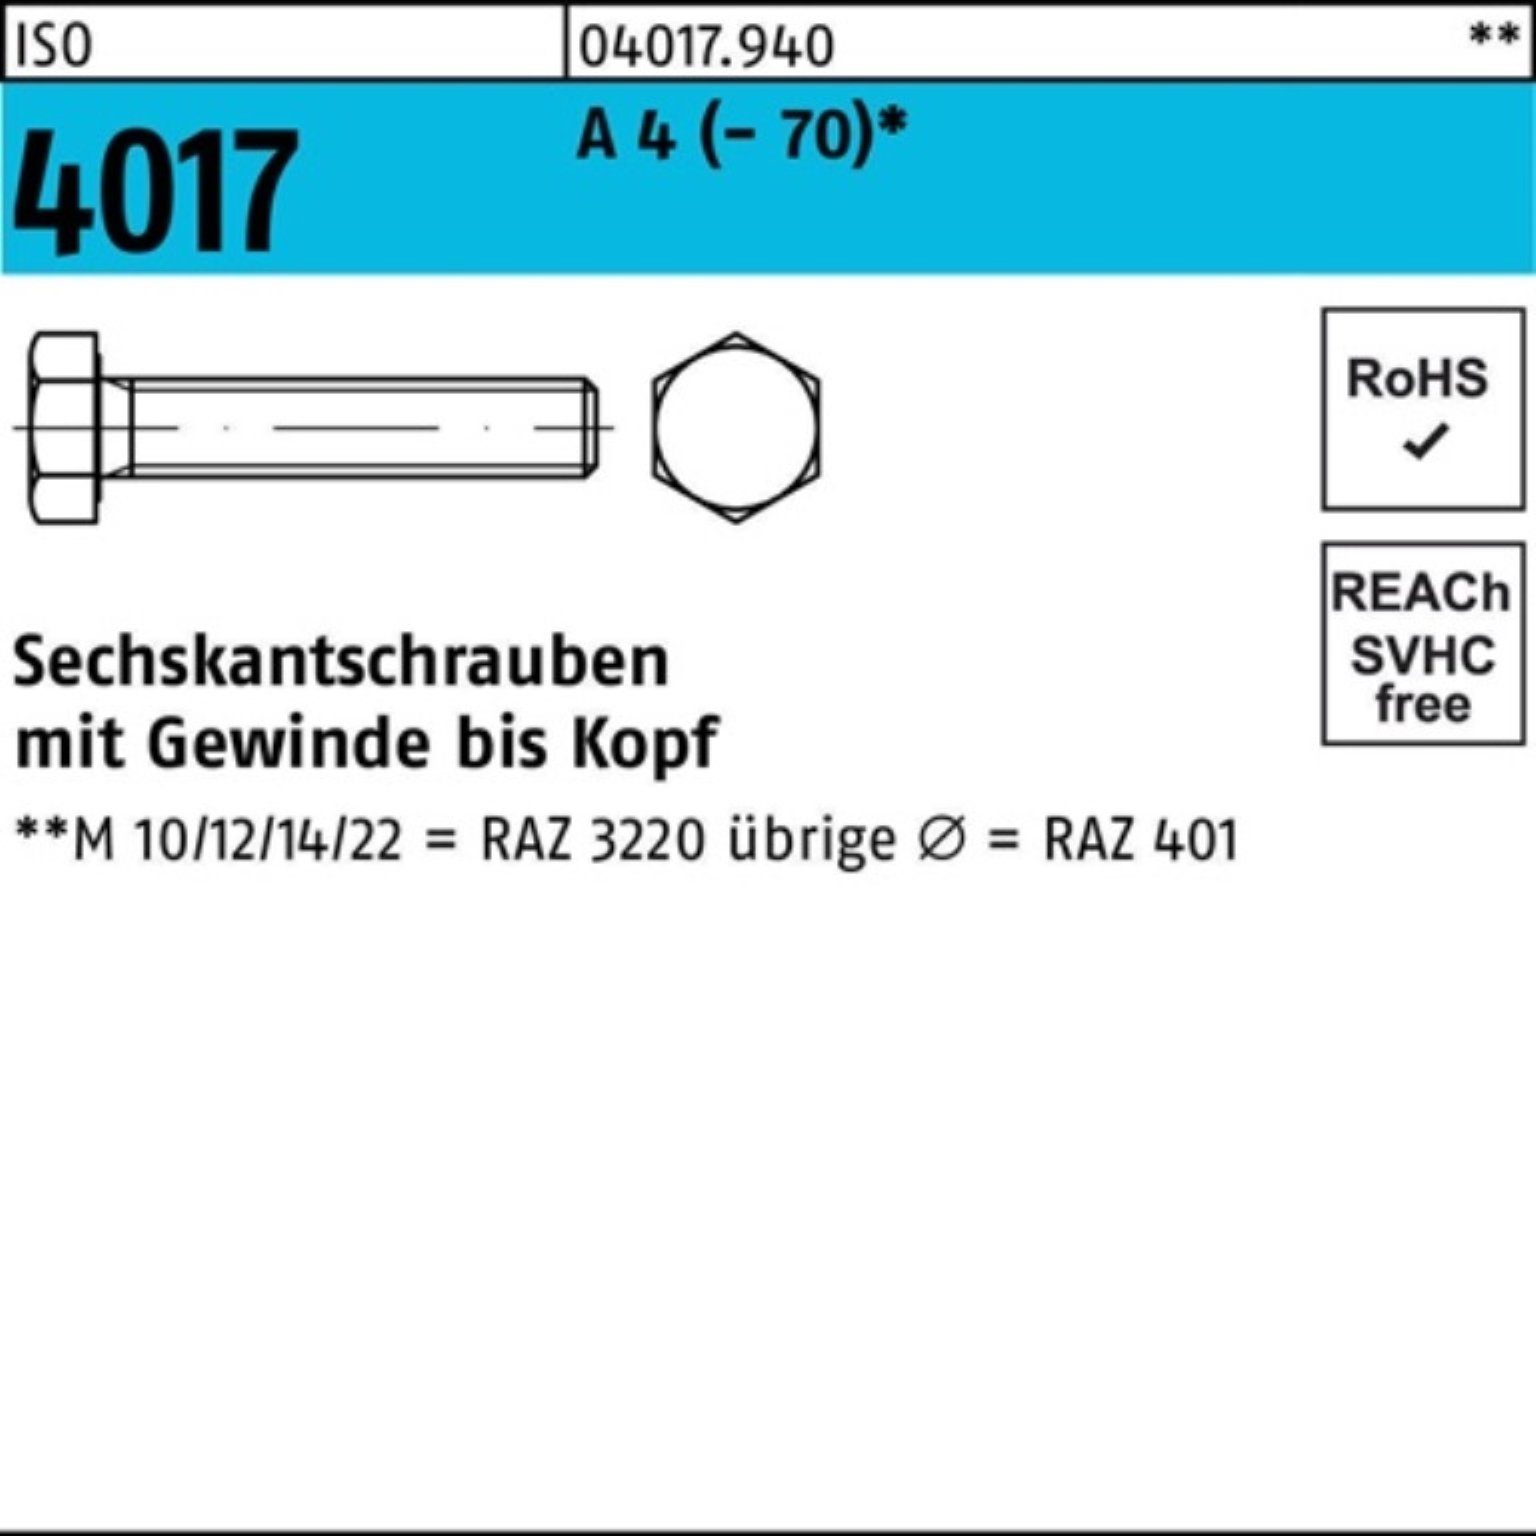 Bufab Sechskantschraube 100er Pack Sechskantschraube ISO 4017 VG M22x 50 A 4 (70) 1 Stück I